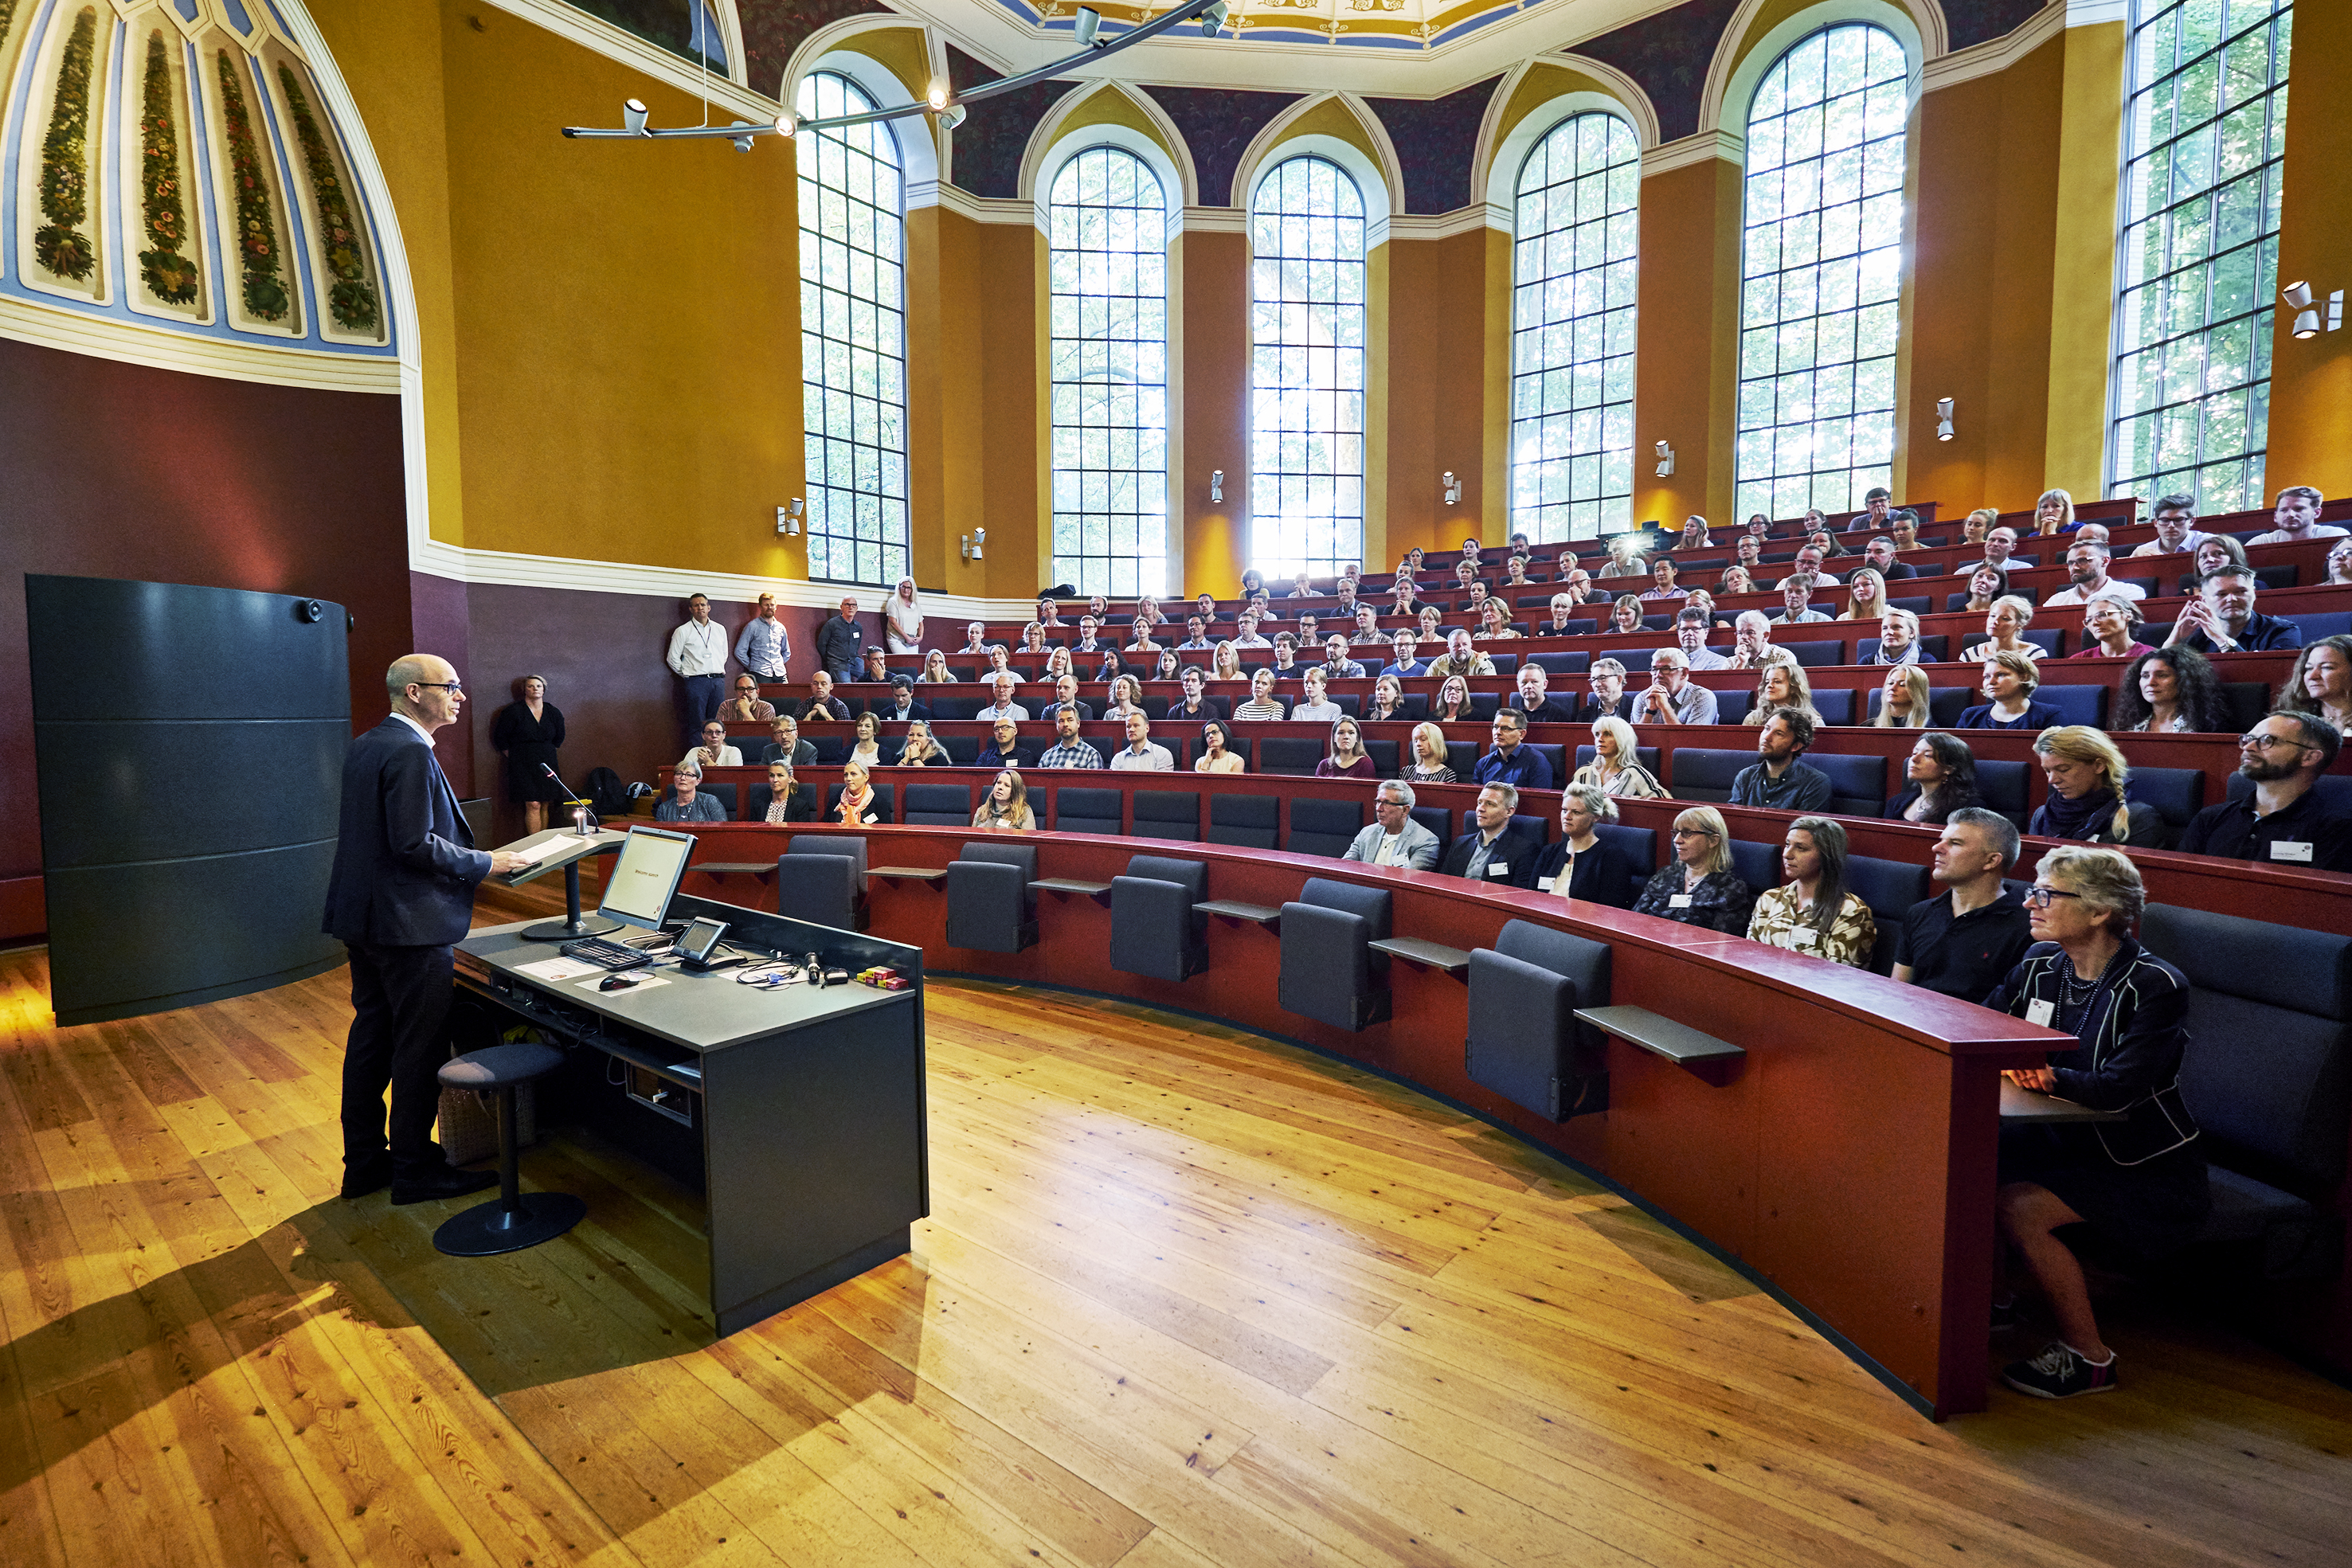 Opening speech by Rector Henrik C. Wegener to start the Copenhagen Summer University